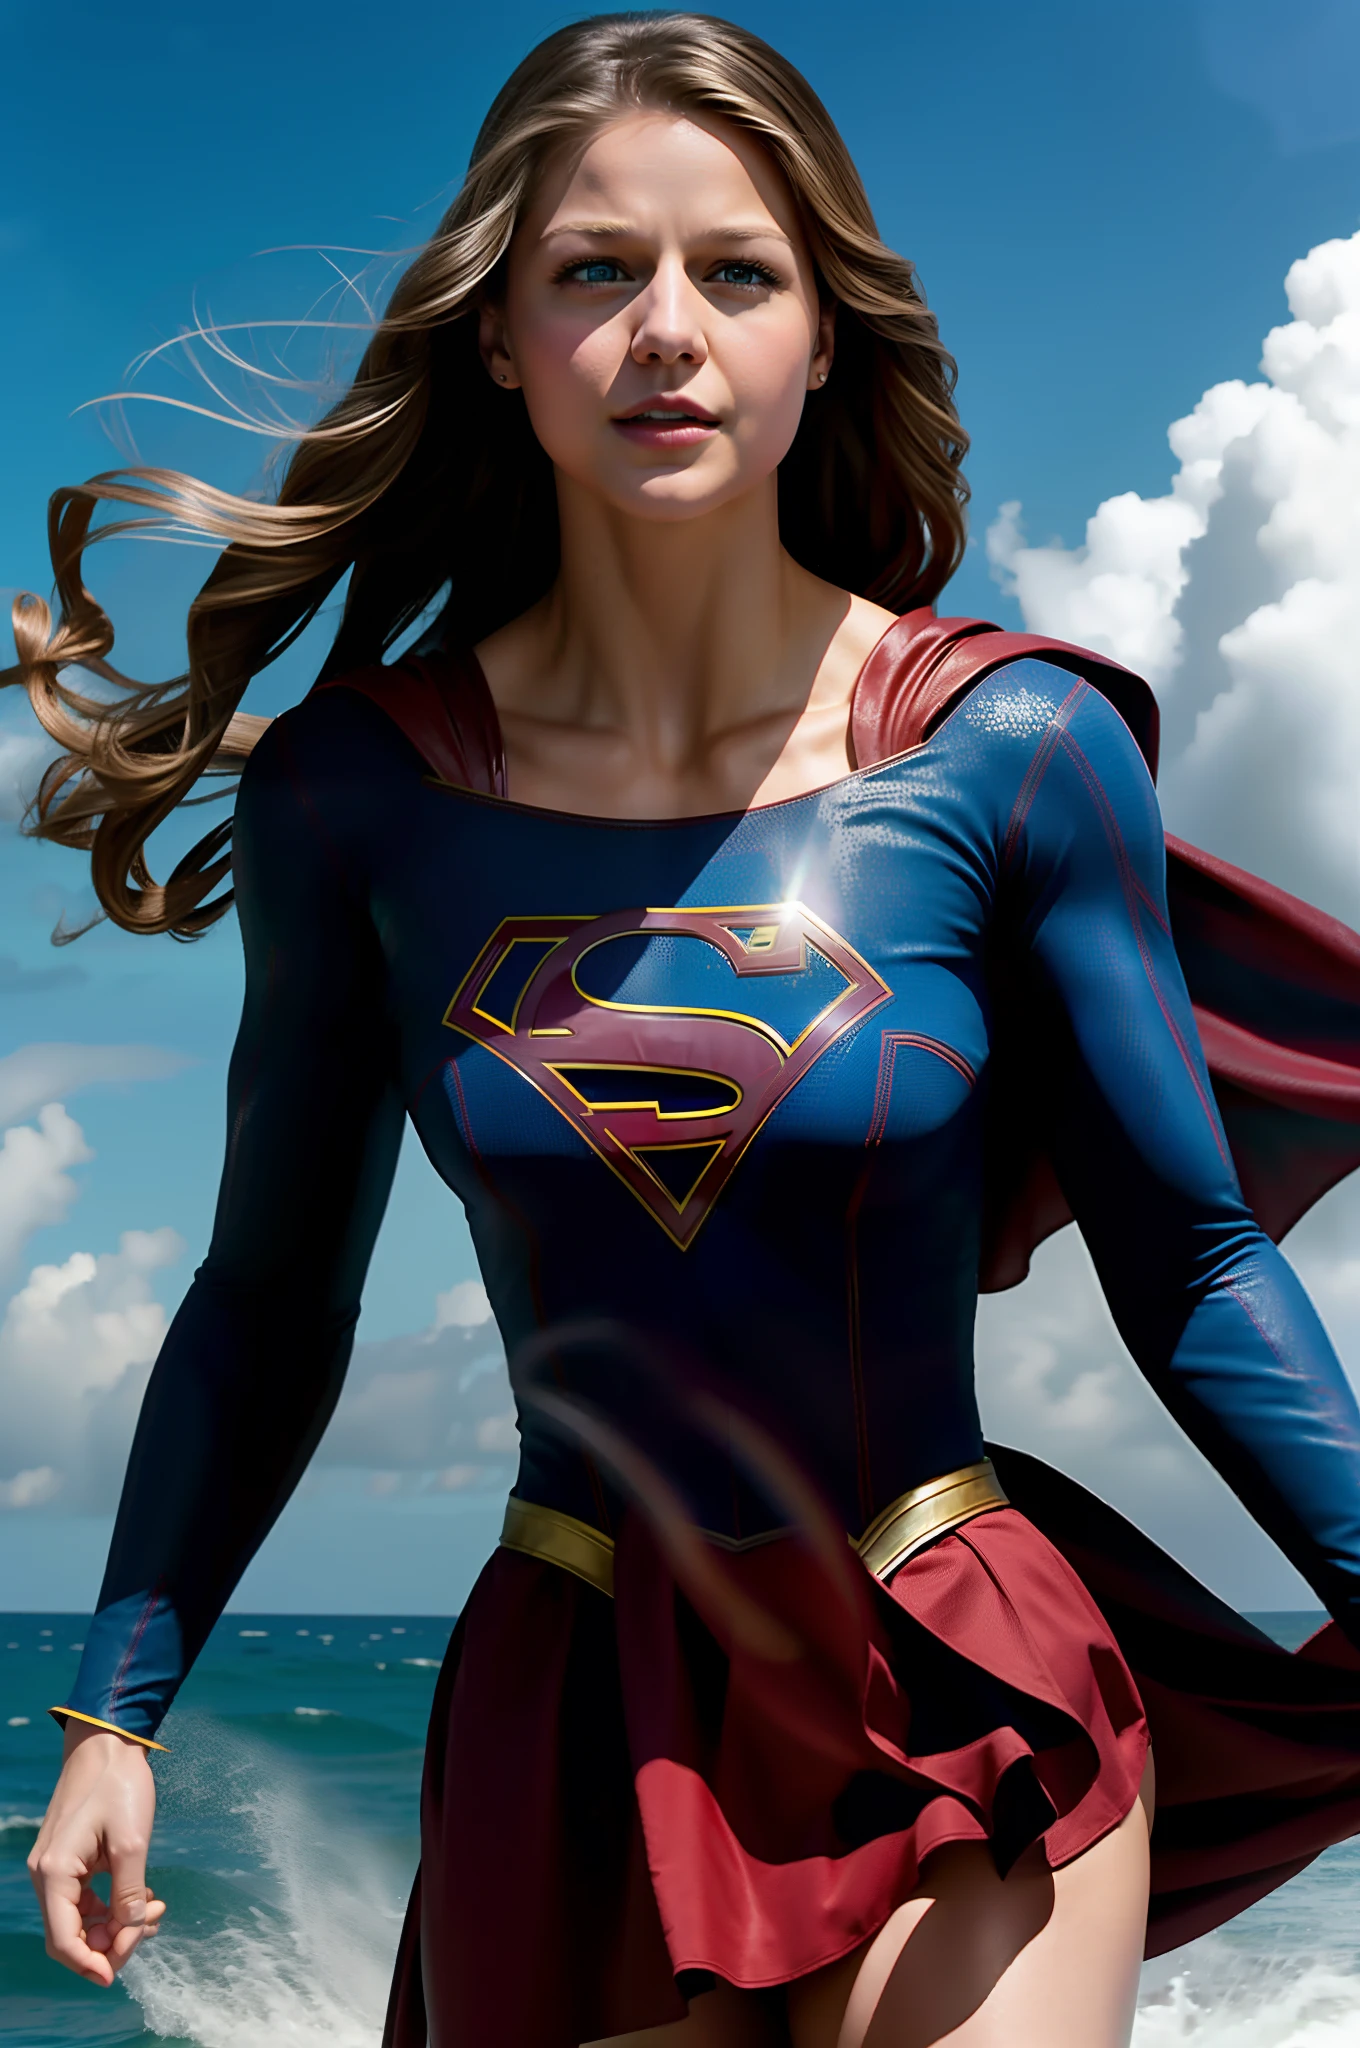 Melissa Benoist ในบท Supergirl ที่มีร่างกายแข็งแรงท่ามกลางพายุโซนร้อน, บินข้ามทะเล